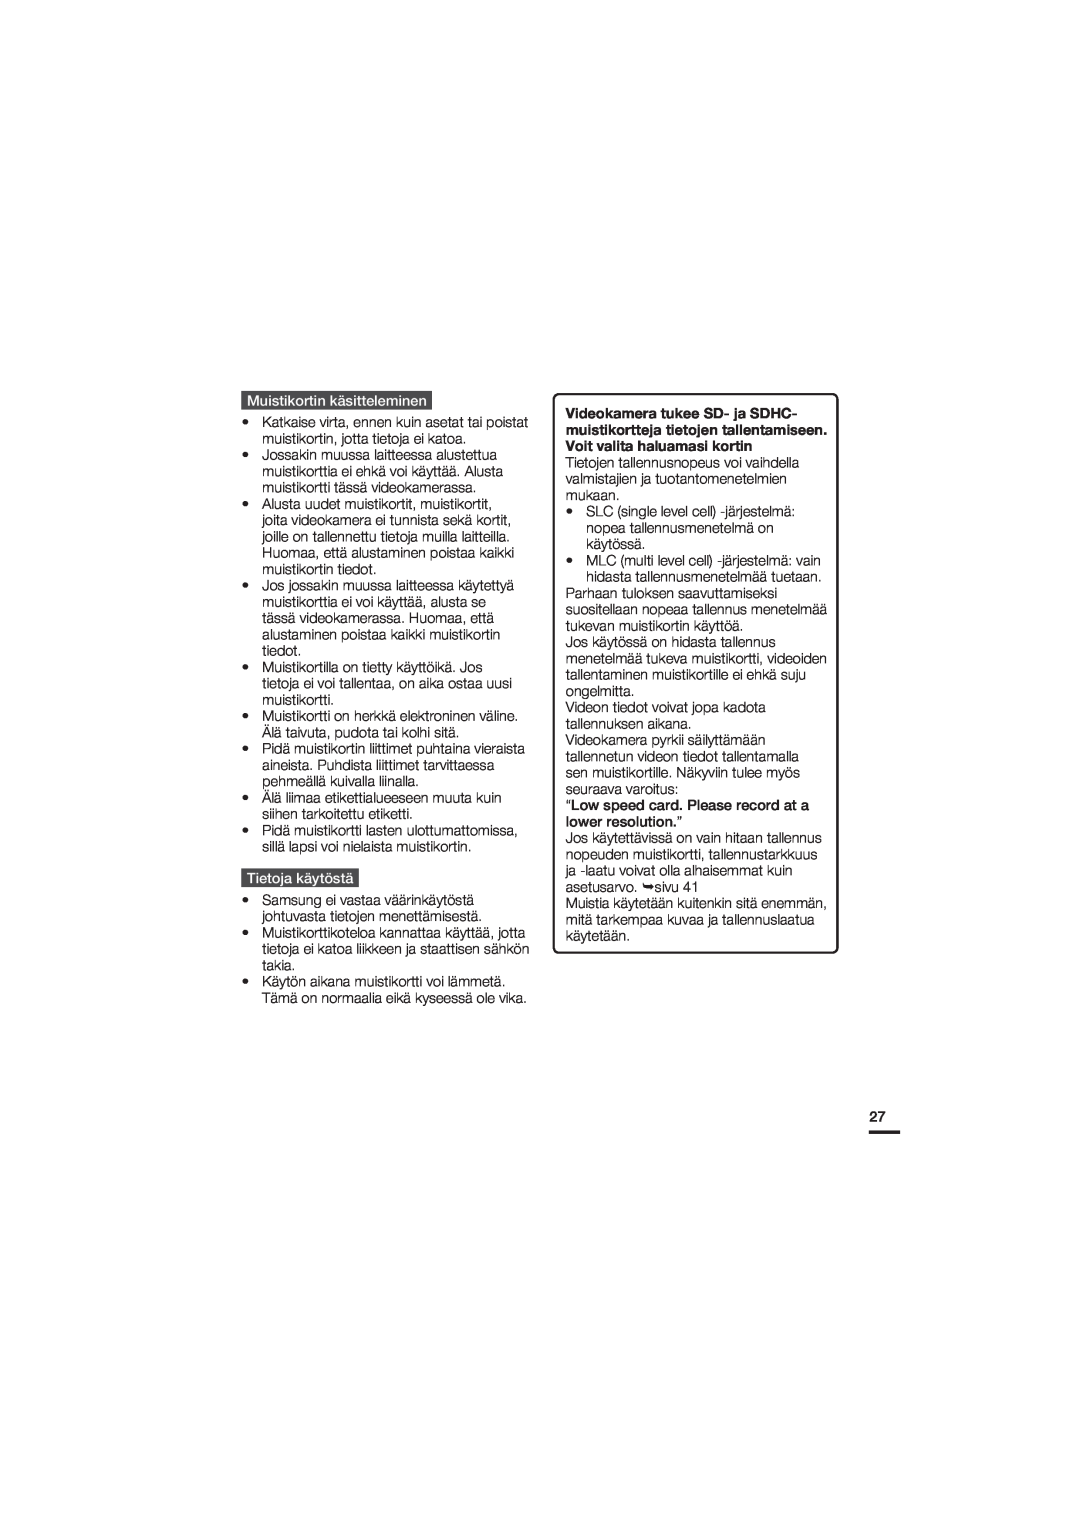 Samsung HMX-U20BP/EDC manual Muistikortin käsitteleminen, Tietoja käytöstä 